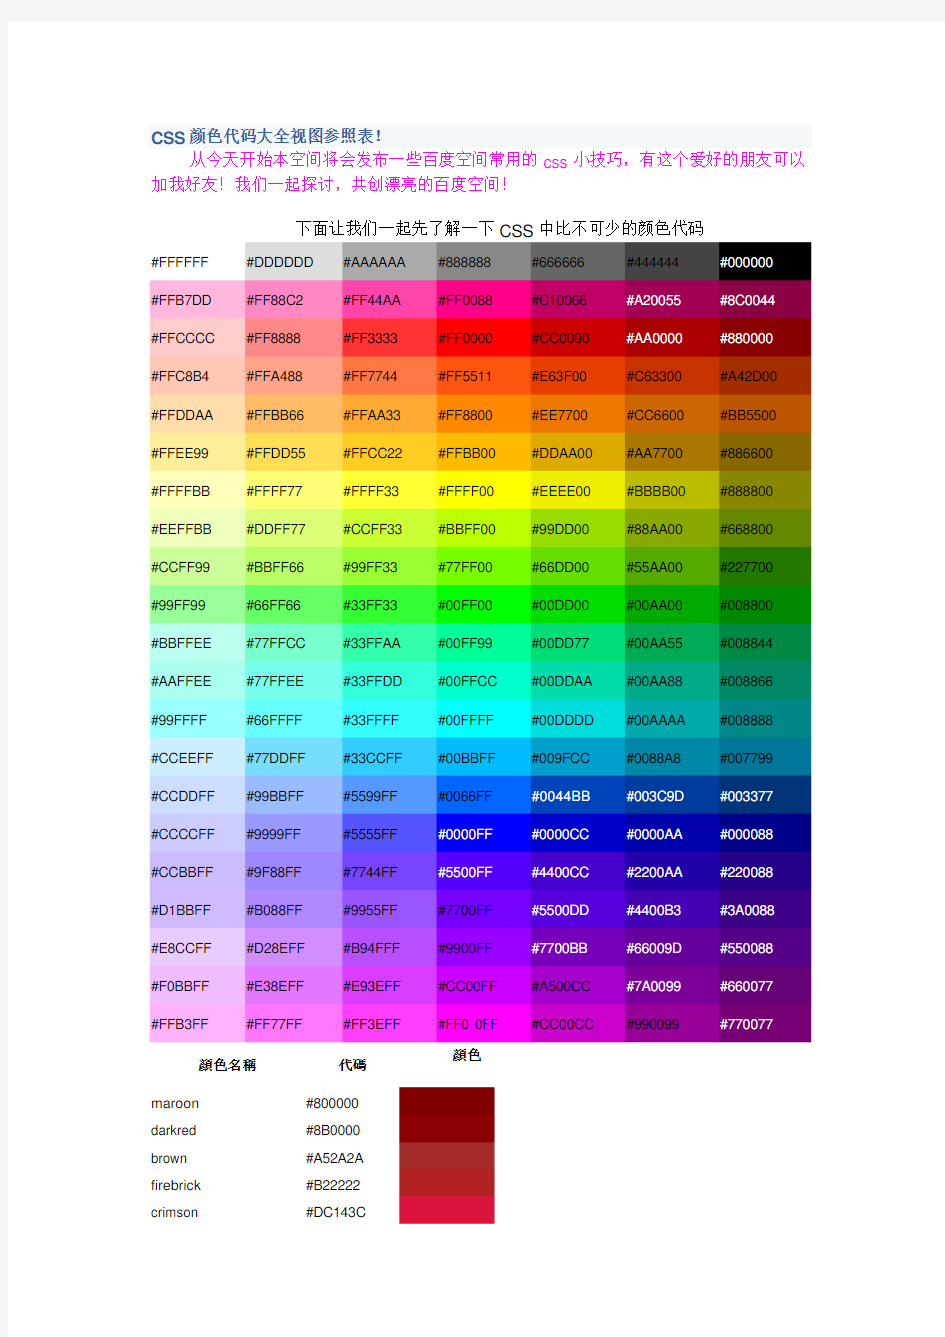 CSS颜色代码大全视图参照表!